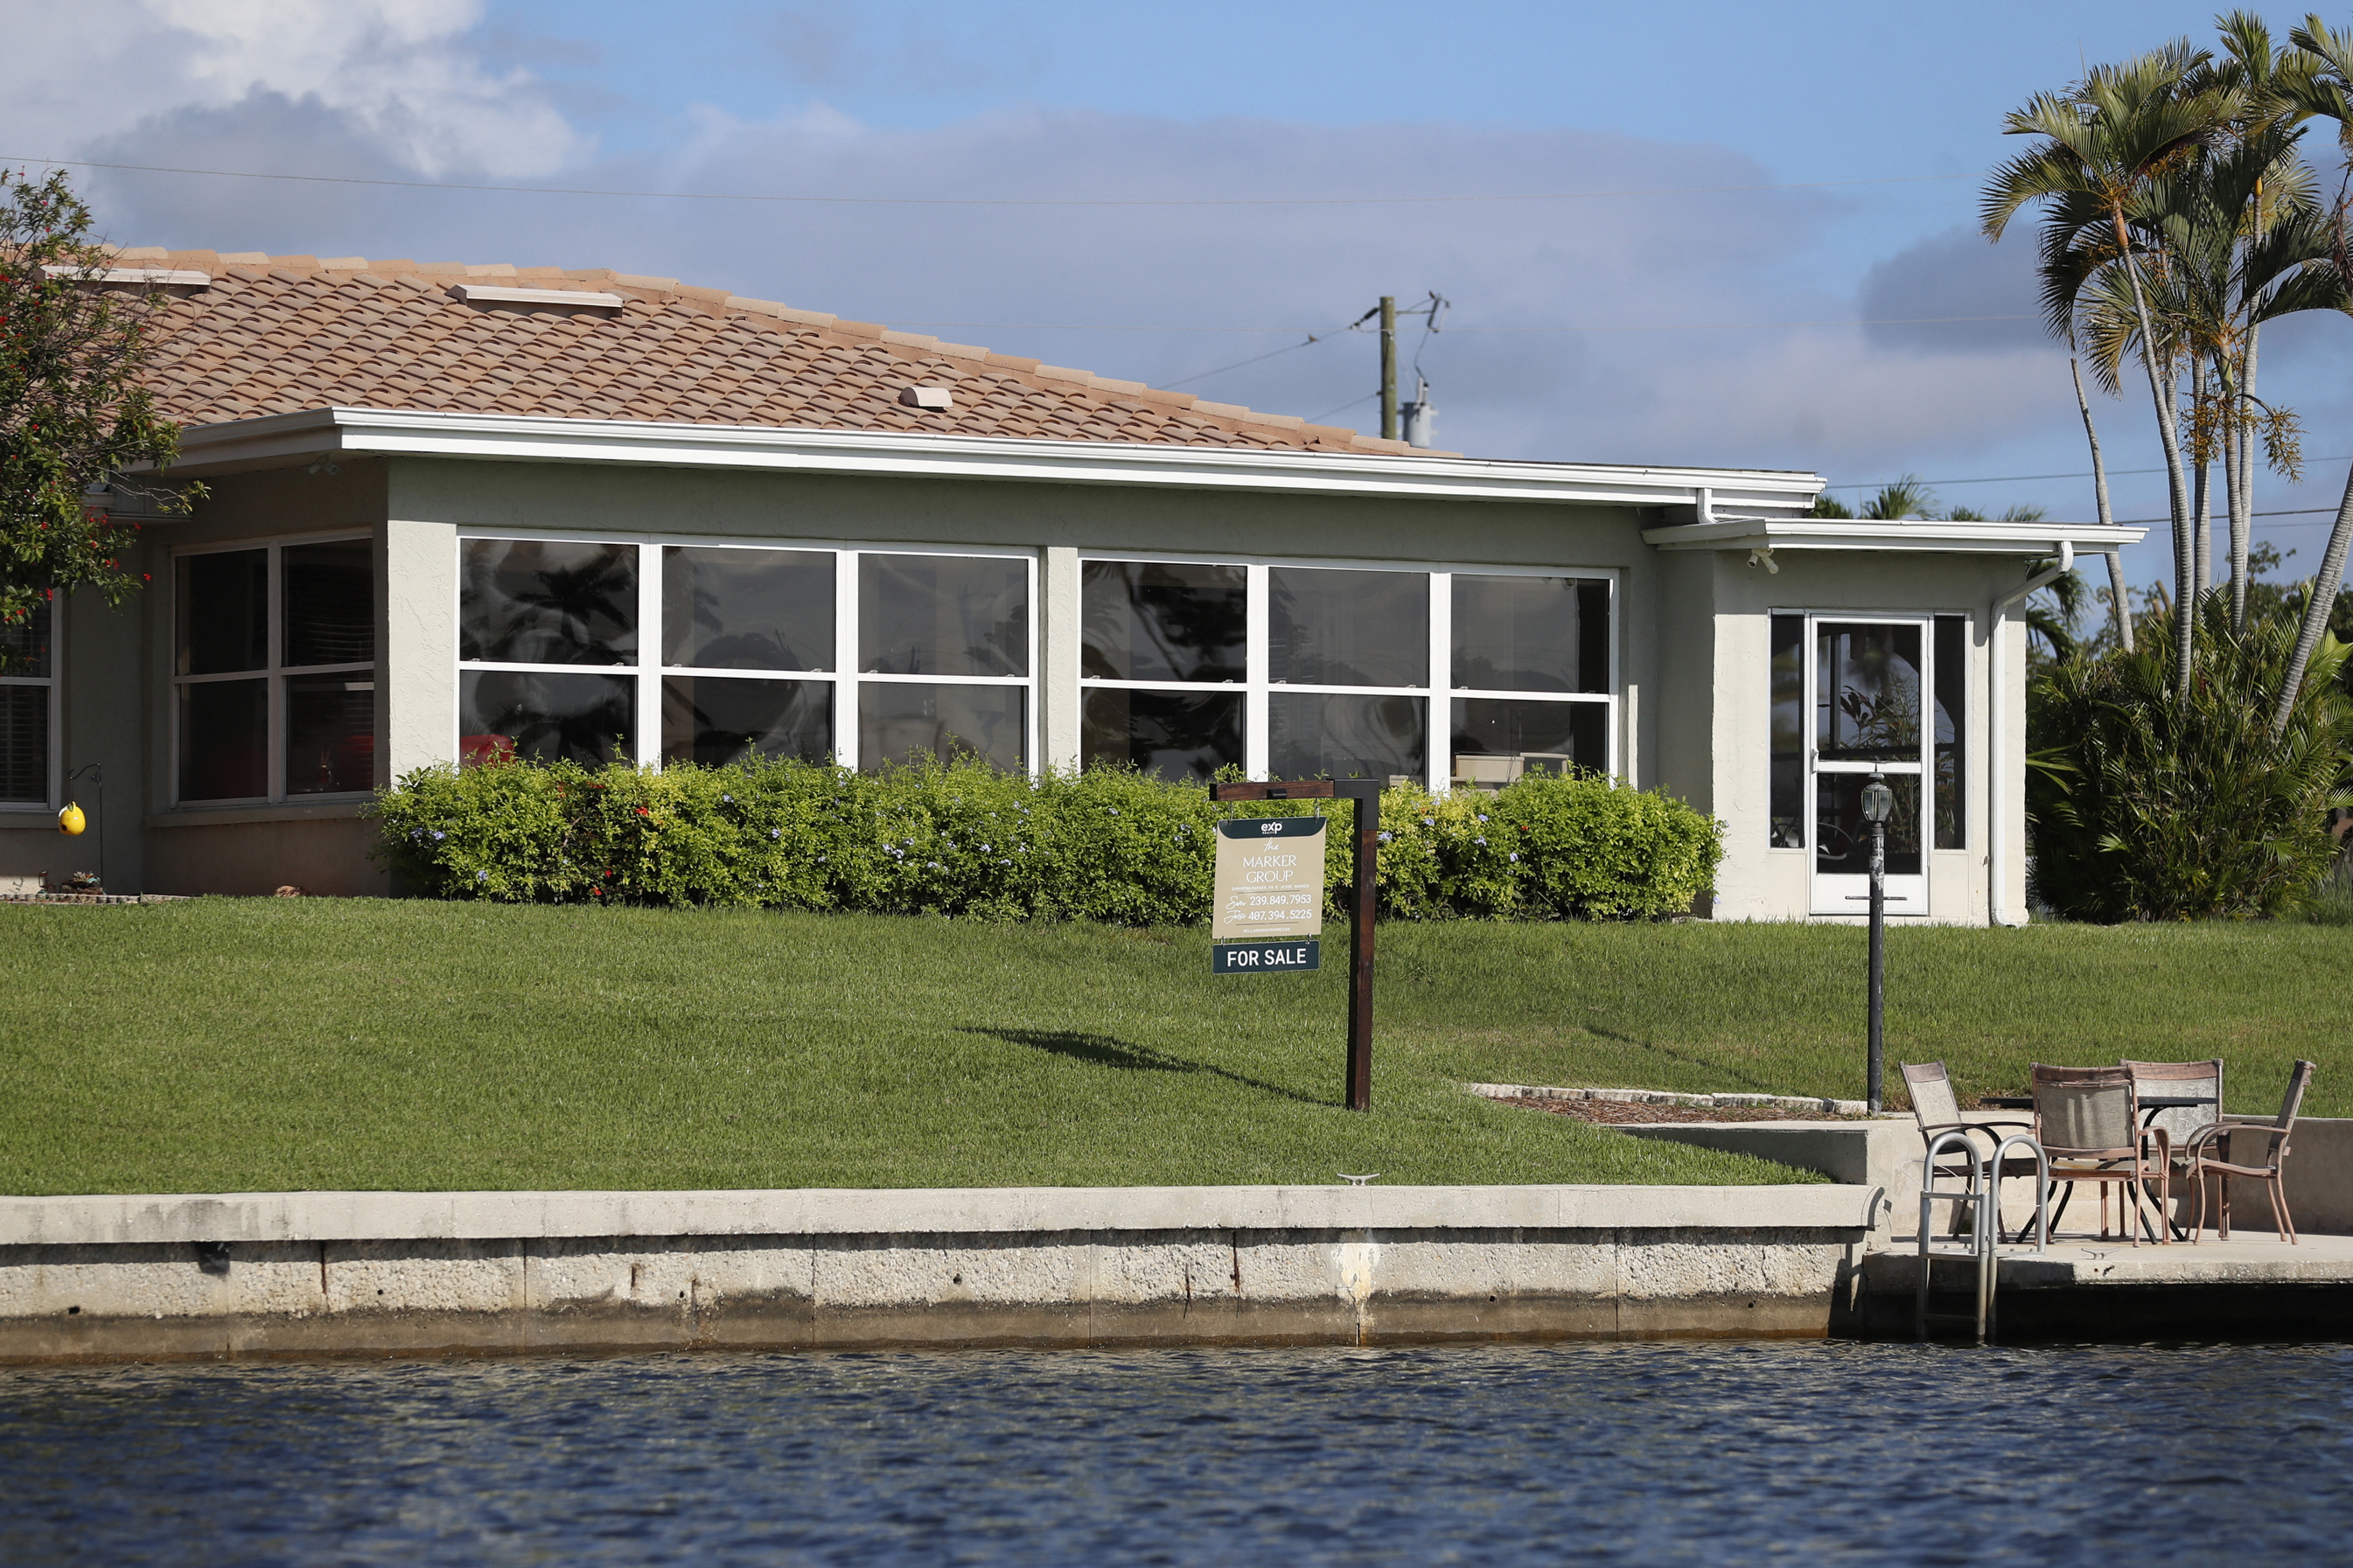 newsweek.com - Giulia Carbonaro - Florida housing market faces 'nightmare scenarios' as deals collapse